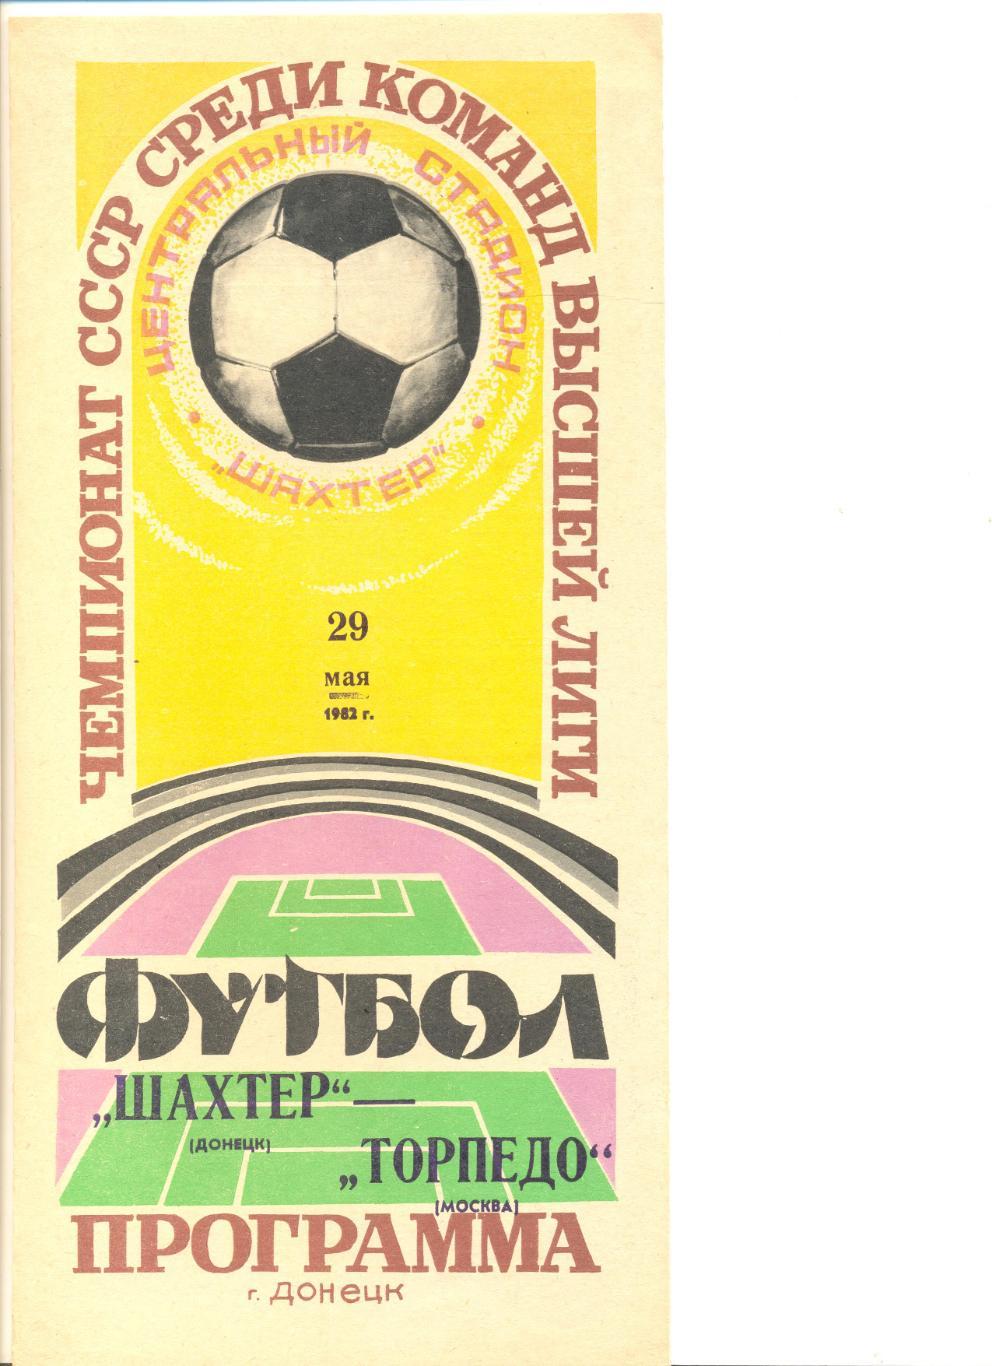 Шахтер Донецк - Торпедо Москва 29.05.1982 г.